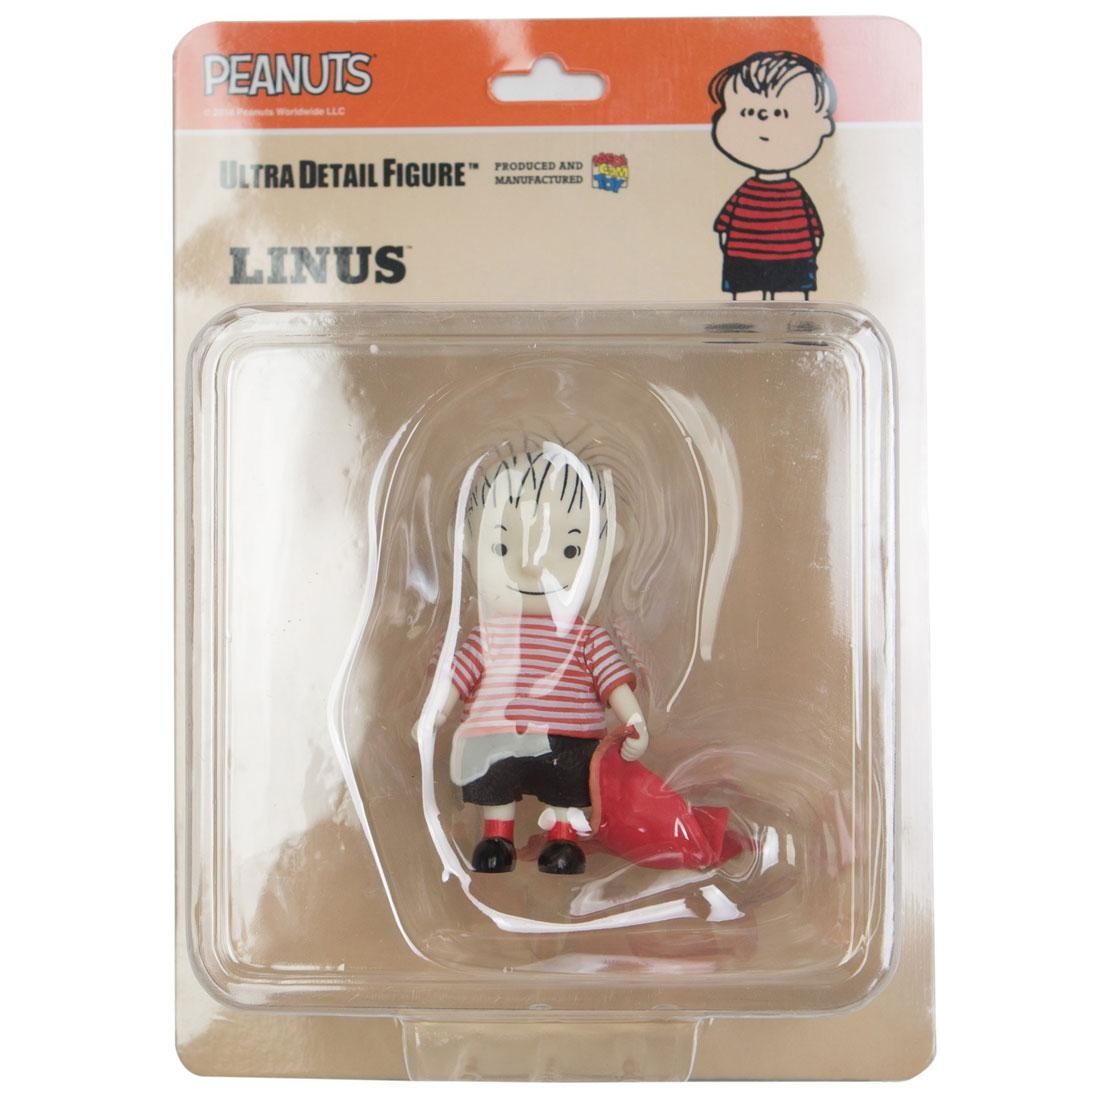 Medicom UDF Peanuts Vintage Ver. Linus Ultra Detail Figure (red)